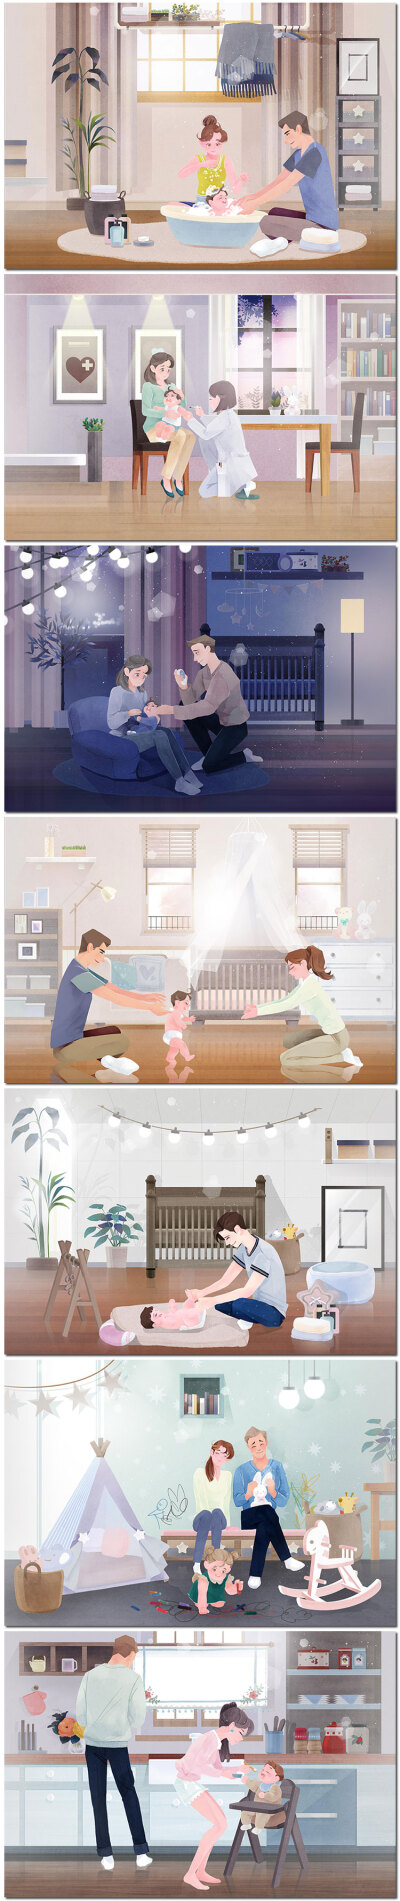 家庭亲子育儿母婴活动休闲一家三口插画插图海报模板PSD设计素材